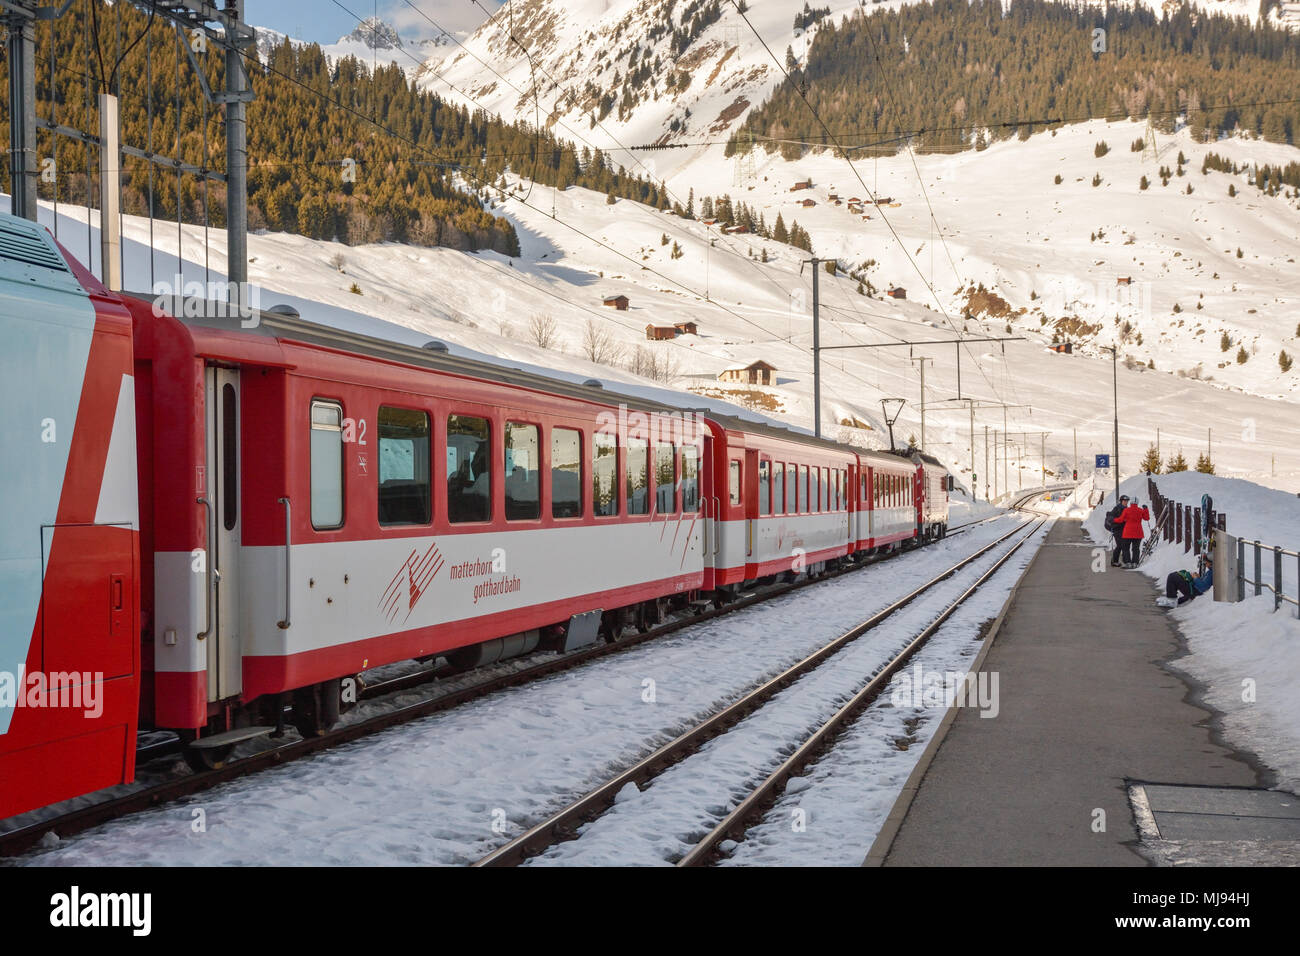 DIENI, Svizzera - 9 febbraio 2018: gli sciatori in attesa del loro treno su Dieni stazione ferroviaria in Svizzera. Il treno li porterà via dell'Oberalp moun Foto Stock